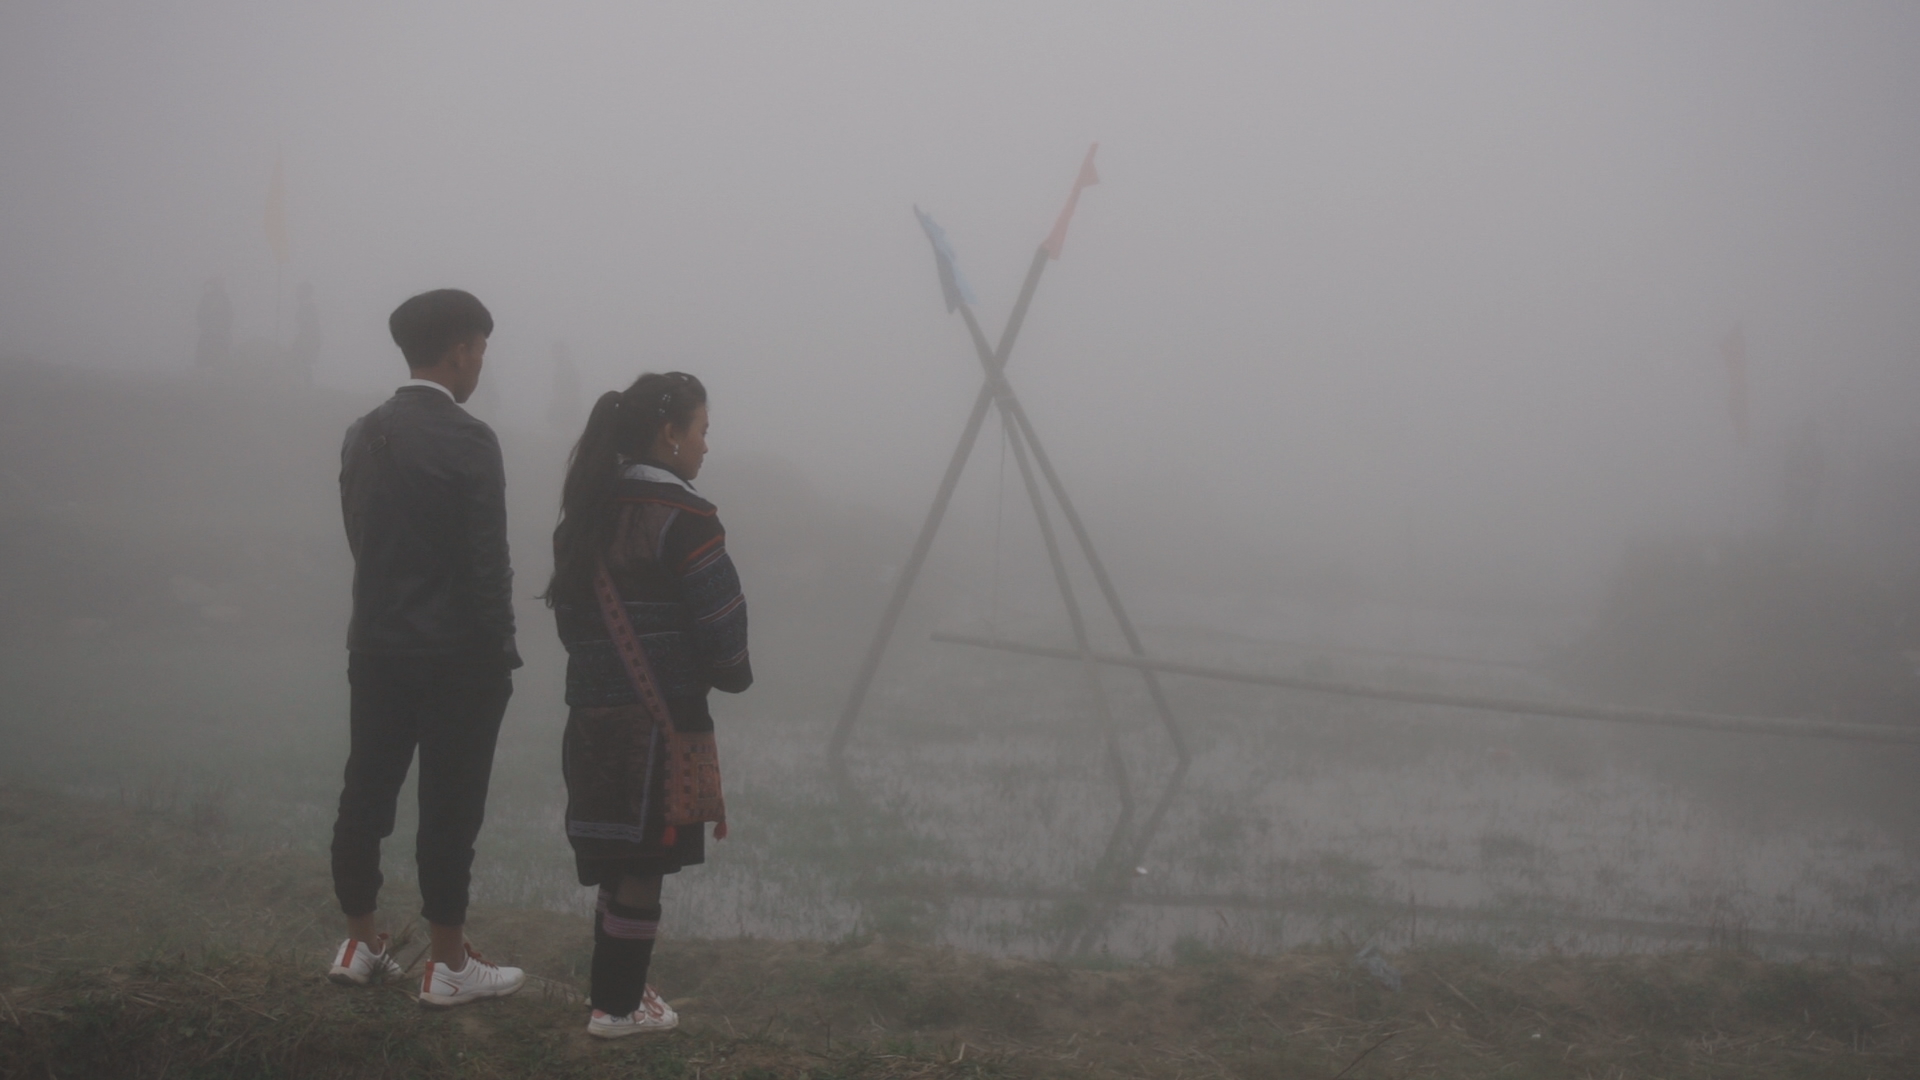 Cô bé Di và bạn trai đến làm lễ kéo vợ trong phim “Những đứa trẻ trong sương” của đạo diễn Hà Lệ Diễm. Ảnh: Đoàn phim cung cấp